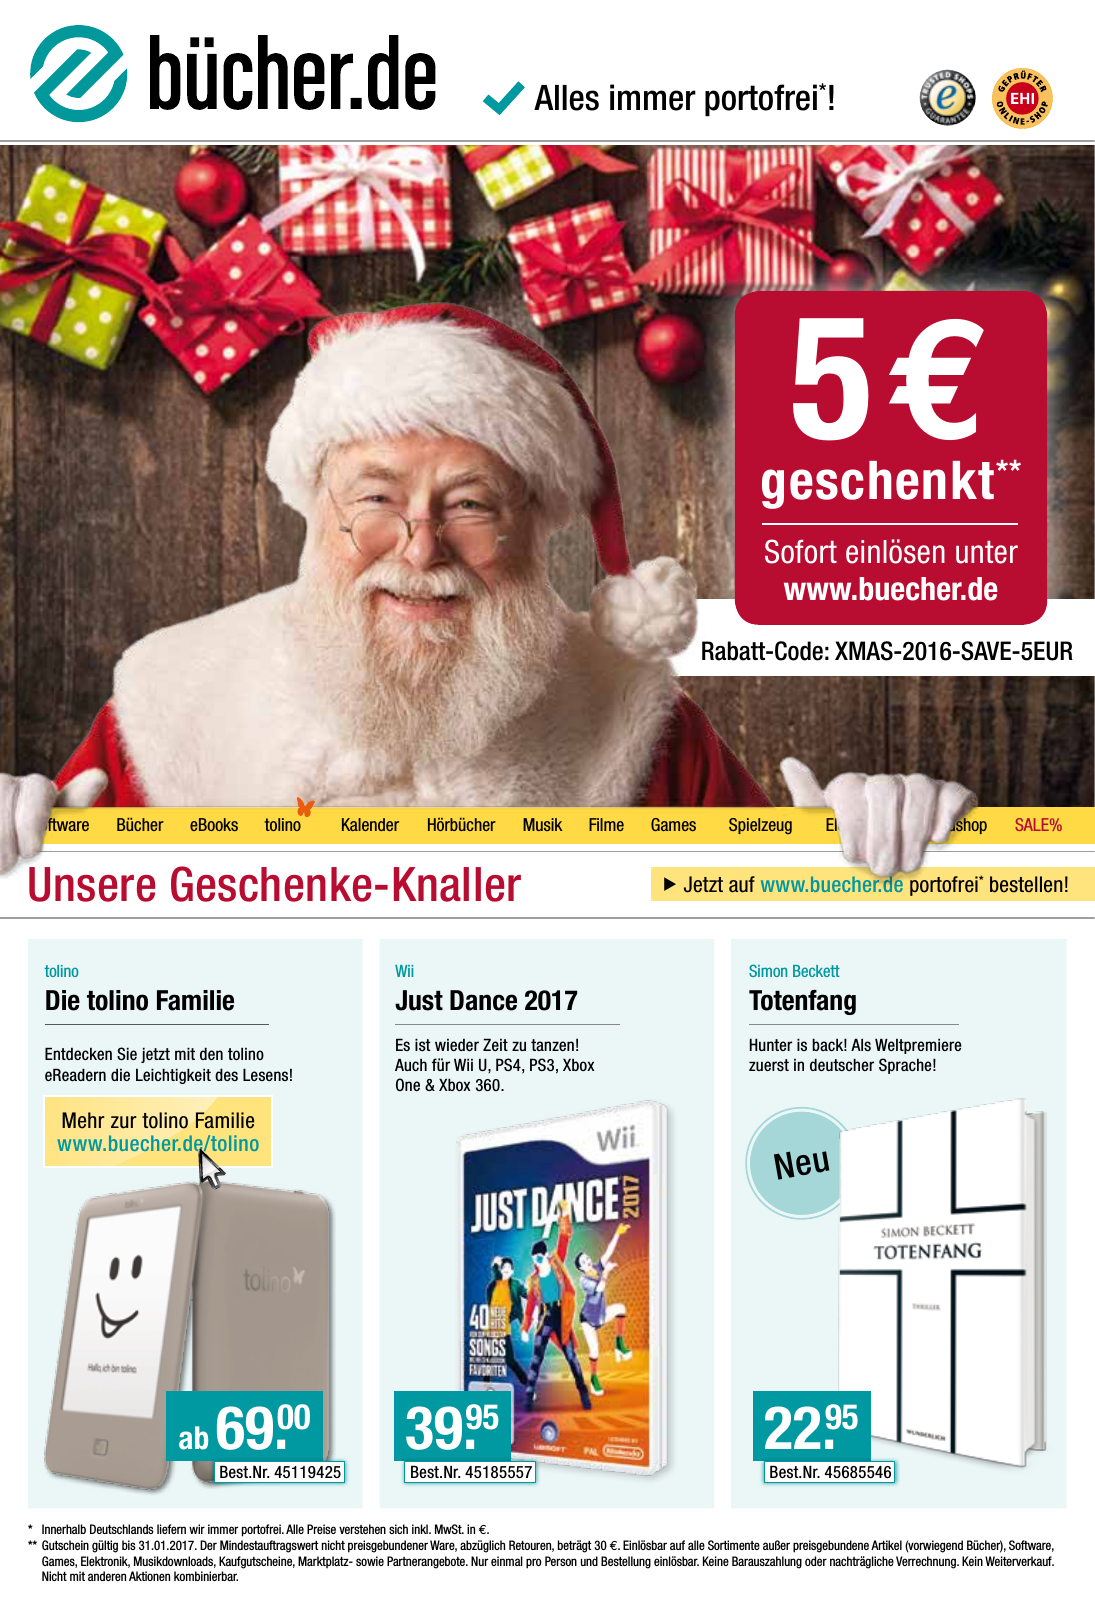 Vorschau bücher.de Weihnachtsprospekt 2016_neu Seite 1